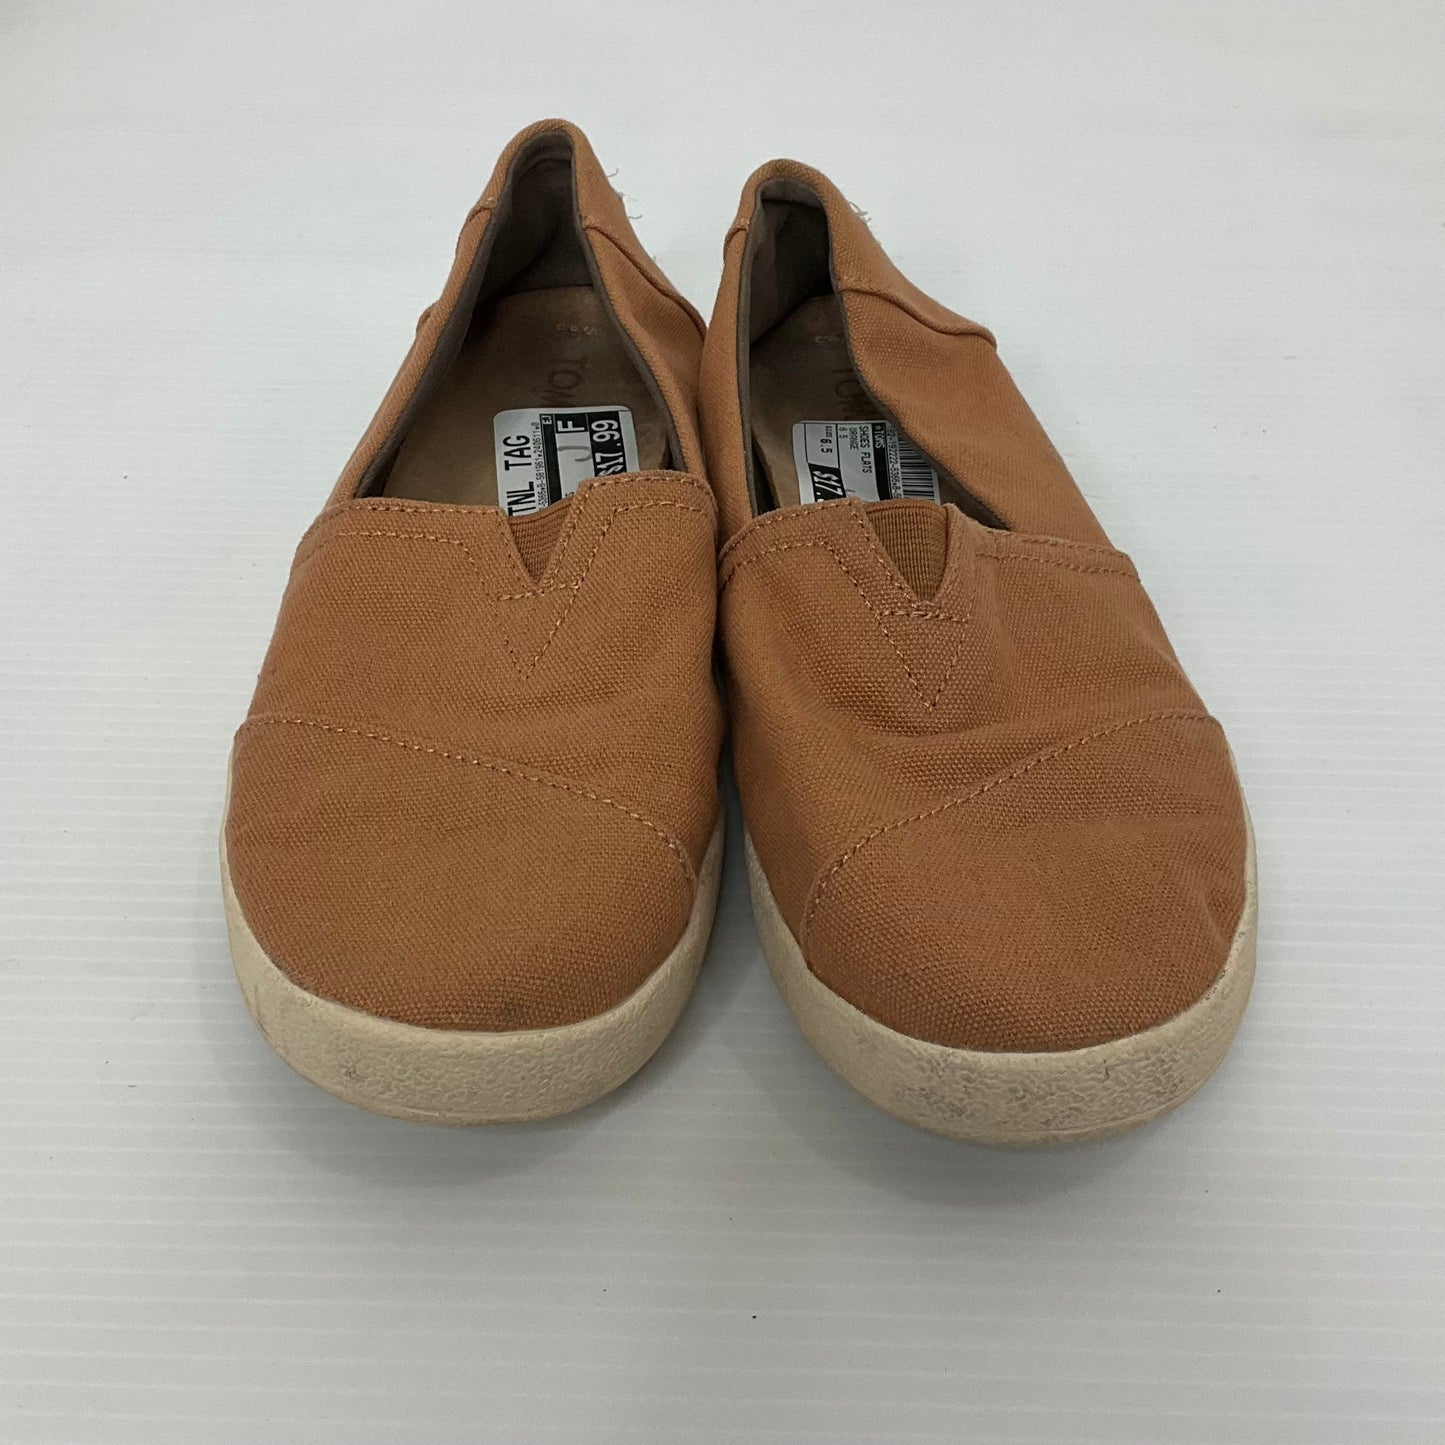 Orange Shoes Flats Toms, Size 6.5